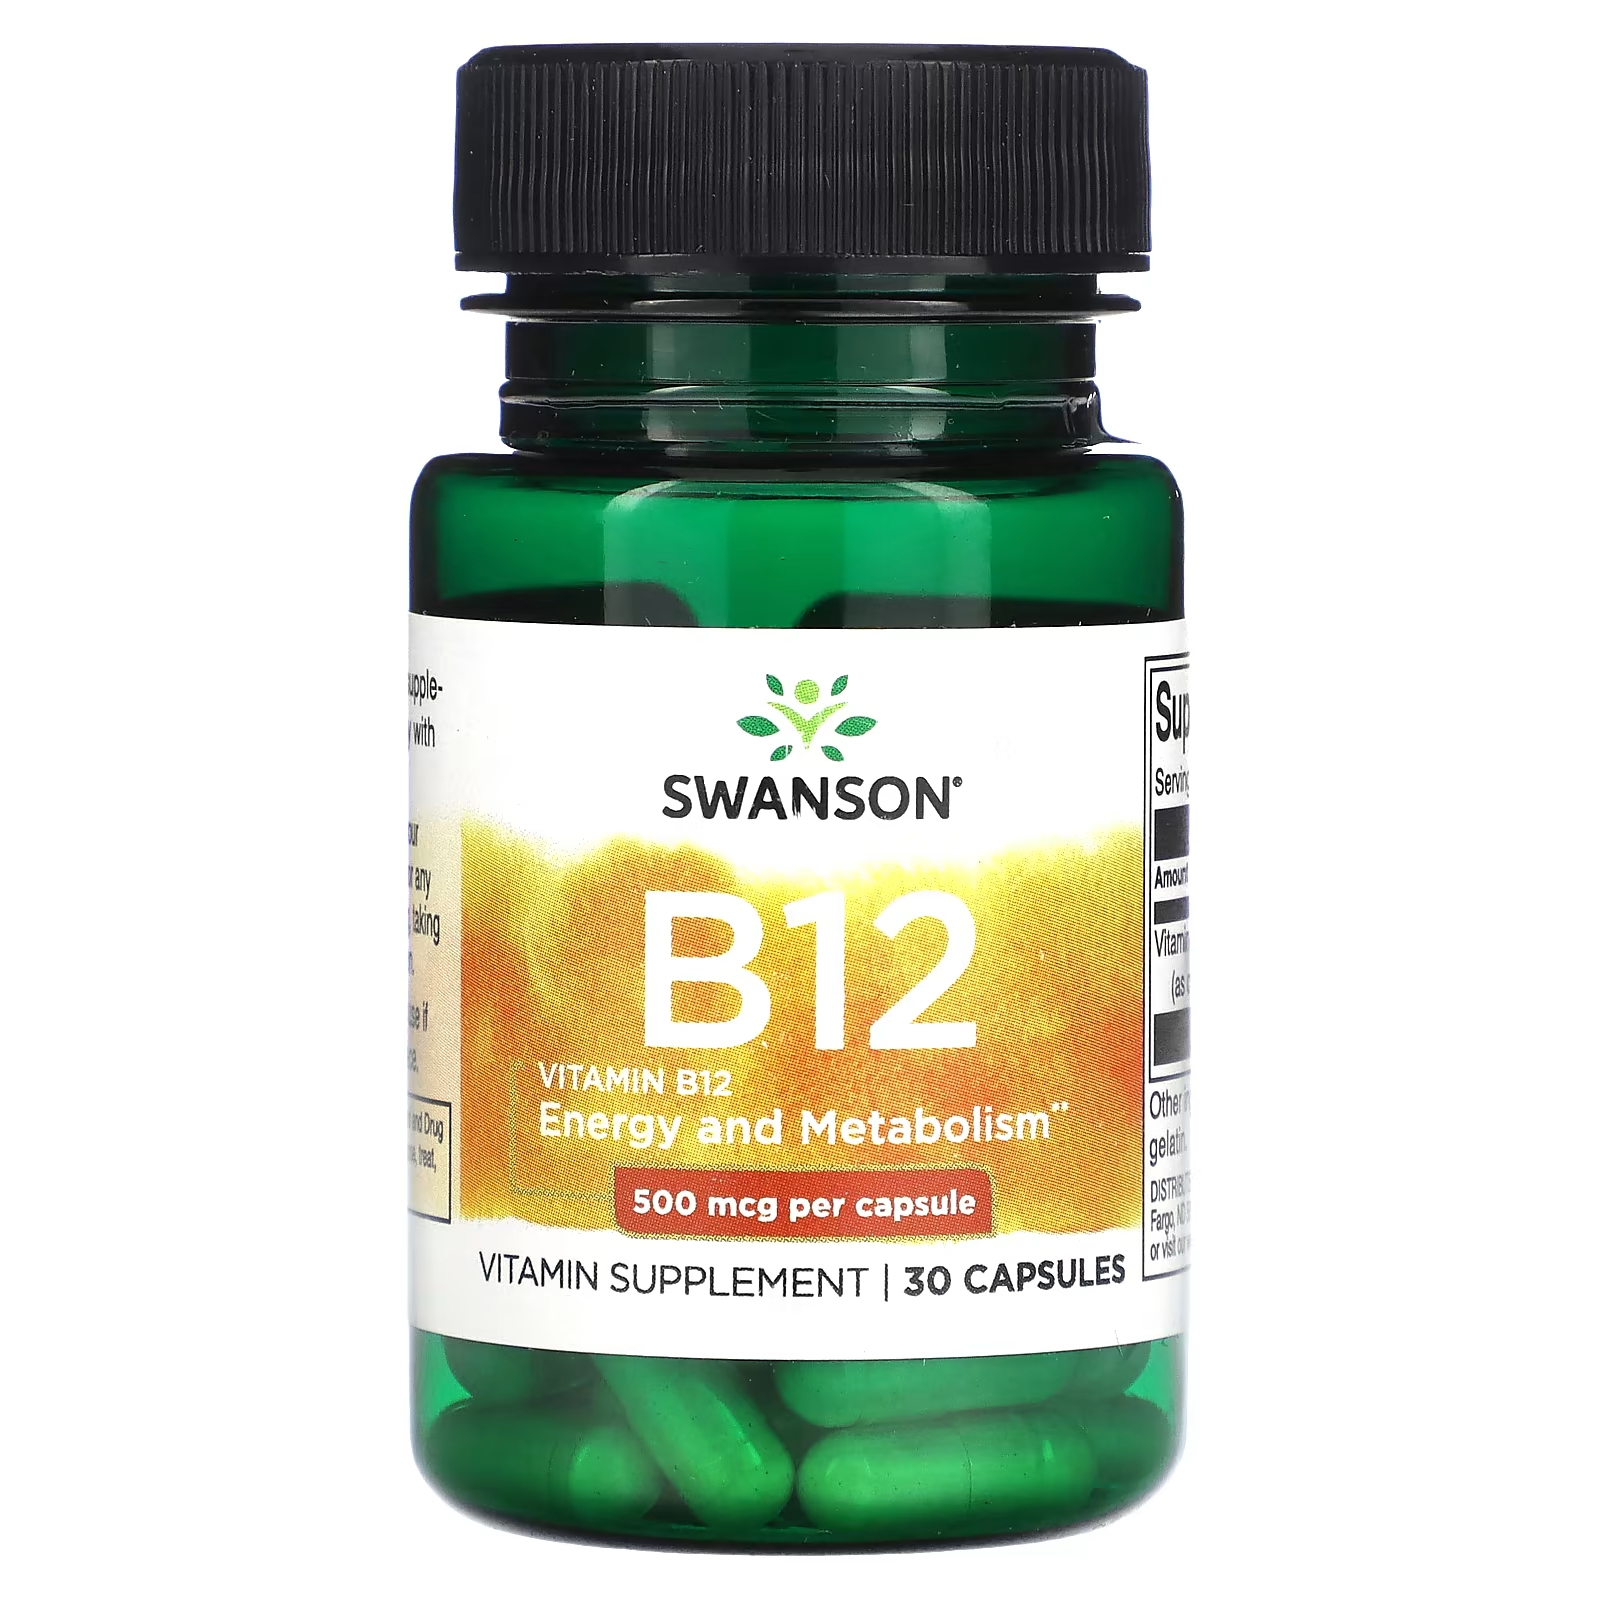 биологически активная добавка naturesplus shot o b12 5000 мкг 30 таблеток Биологически активная добавка Swanson витамин B12, 500 мкг., 30 капсул